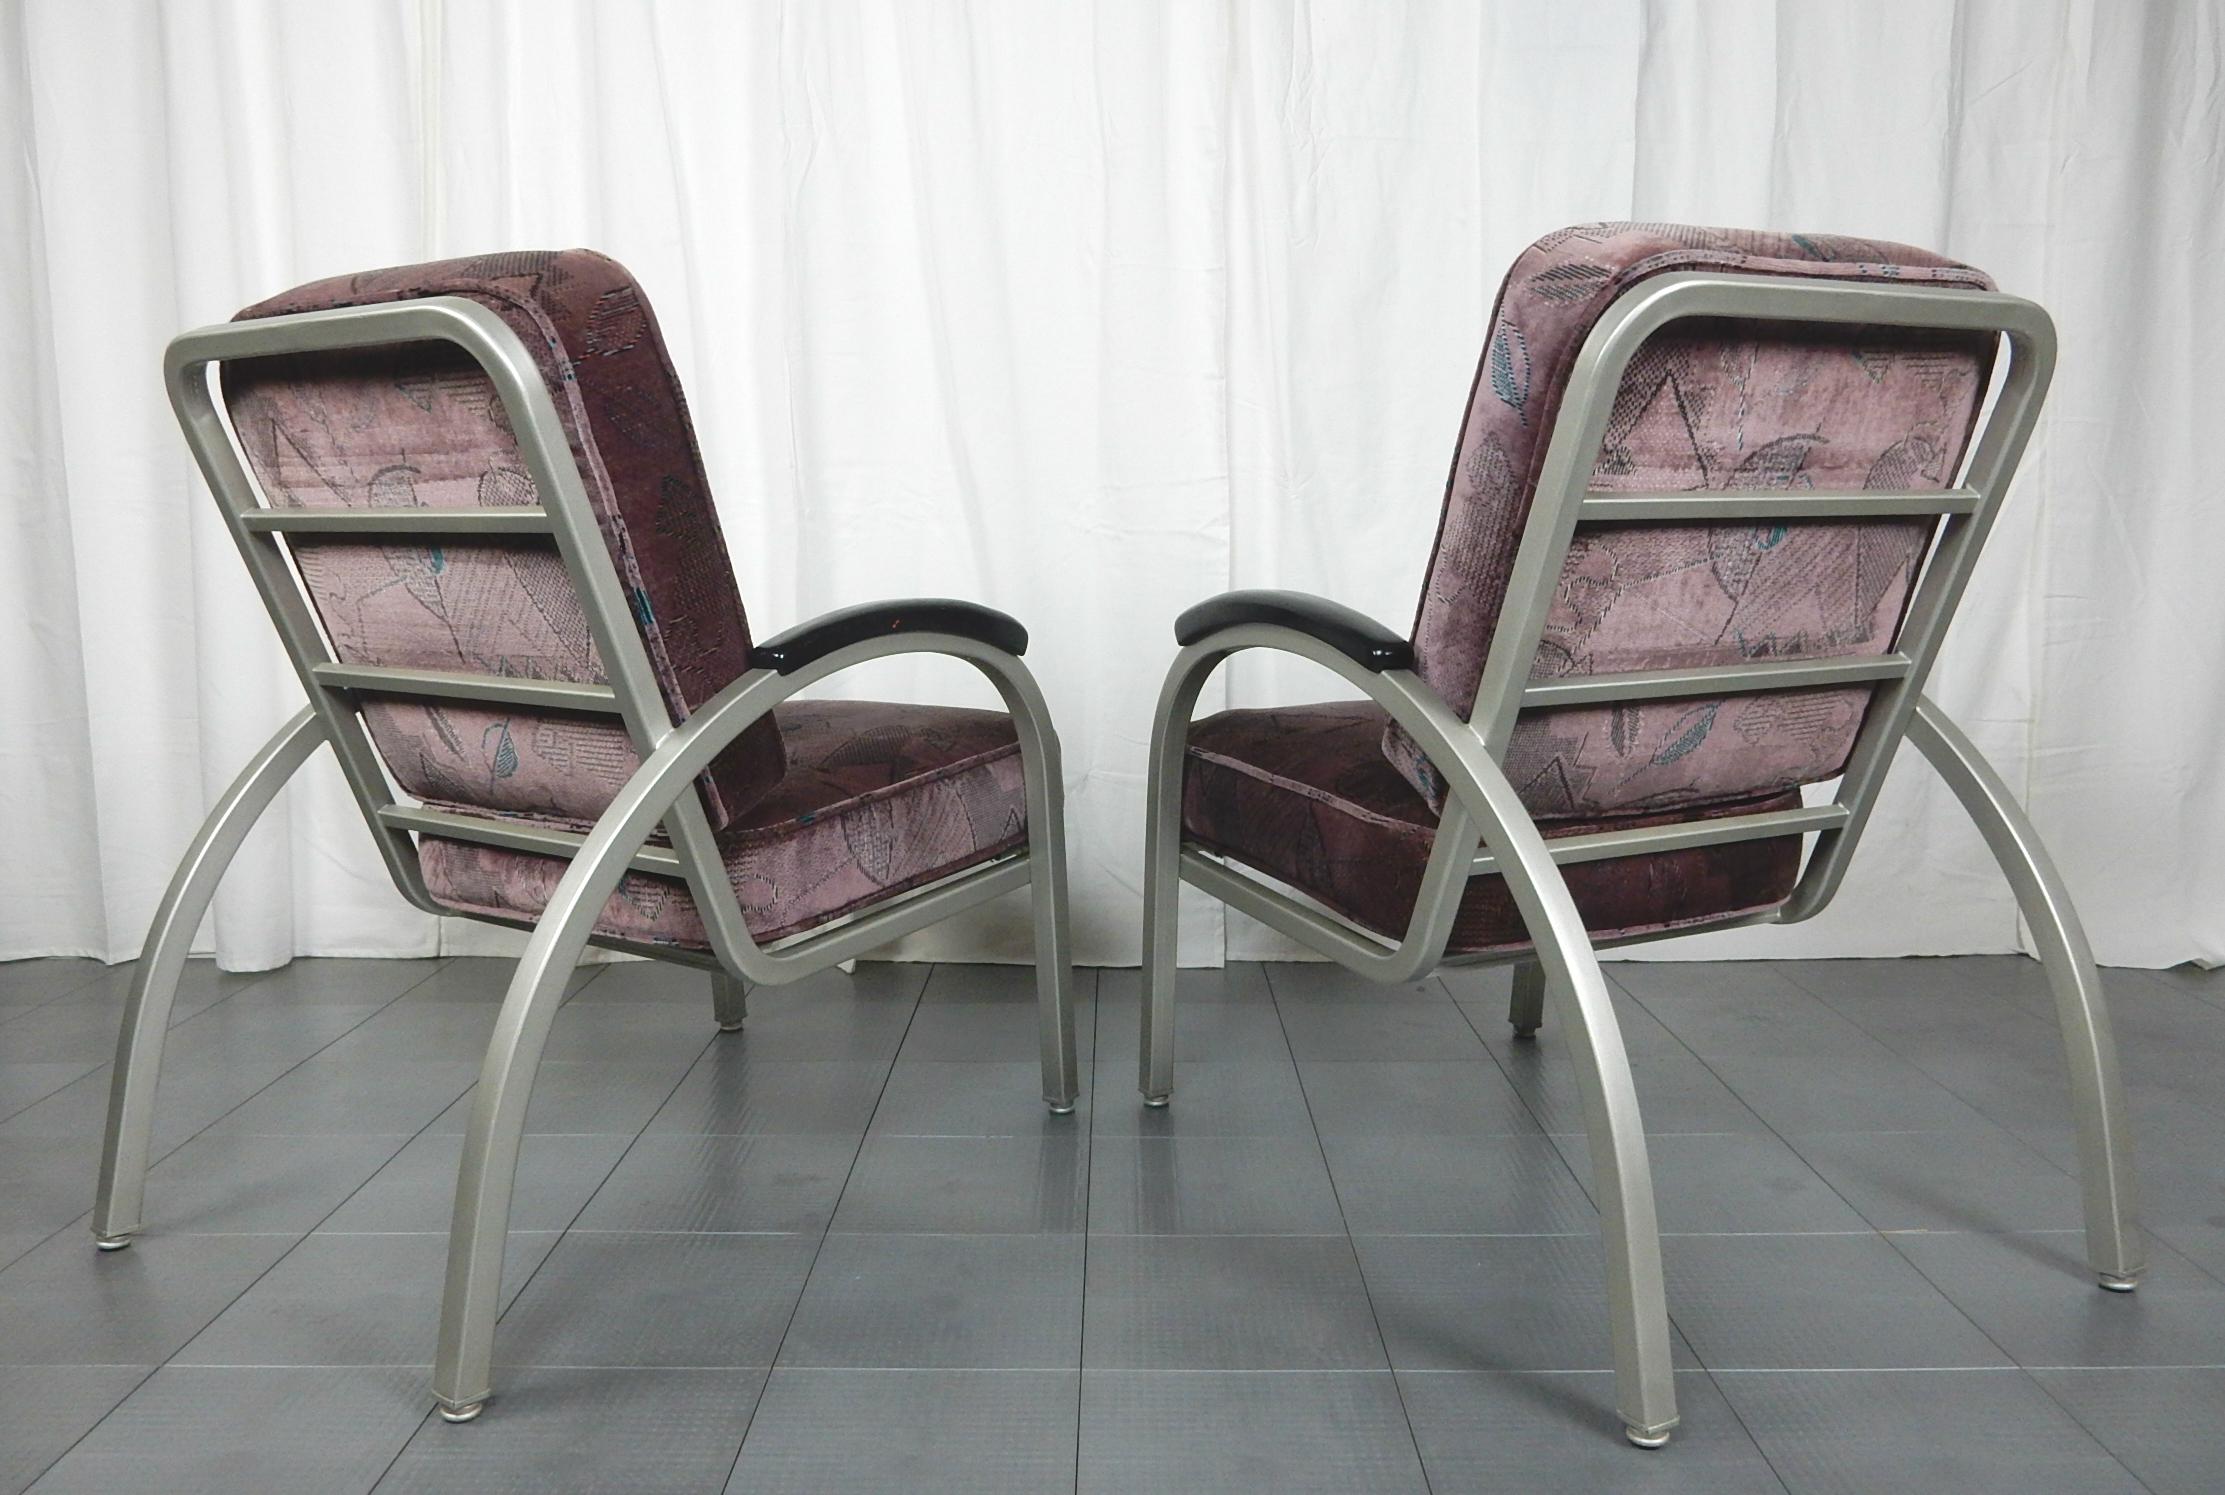 Paire de chaises longues Streamline Moderne conçues par Norman Bel Geddes
Les cadres sont peints en nickel satiné et les coussins sont recouverts de velours d'époque au design moderne.
Les deux chaises sont propres et en très bon état. Un confort